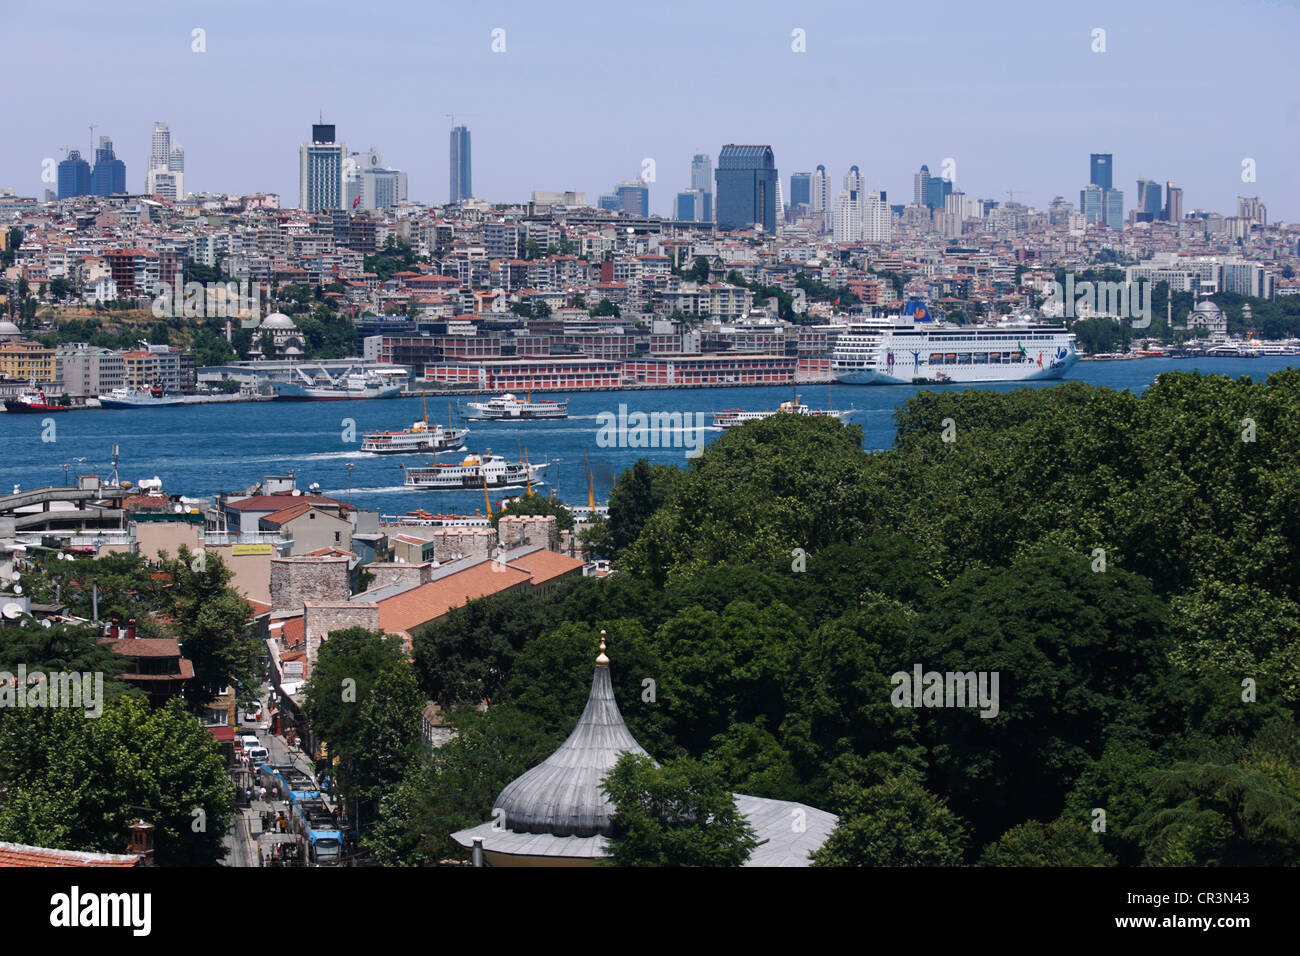 La Turquie, Istanbul, Bosphore vu de la péninsule avec le quartier des affaires, sur une colline à la périphérie de la ville Banque D'Images